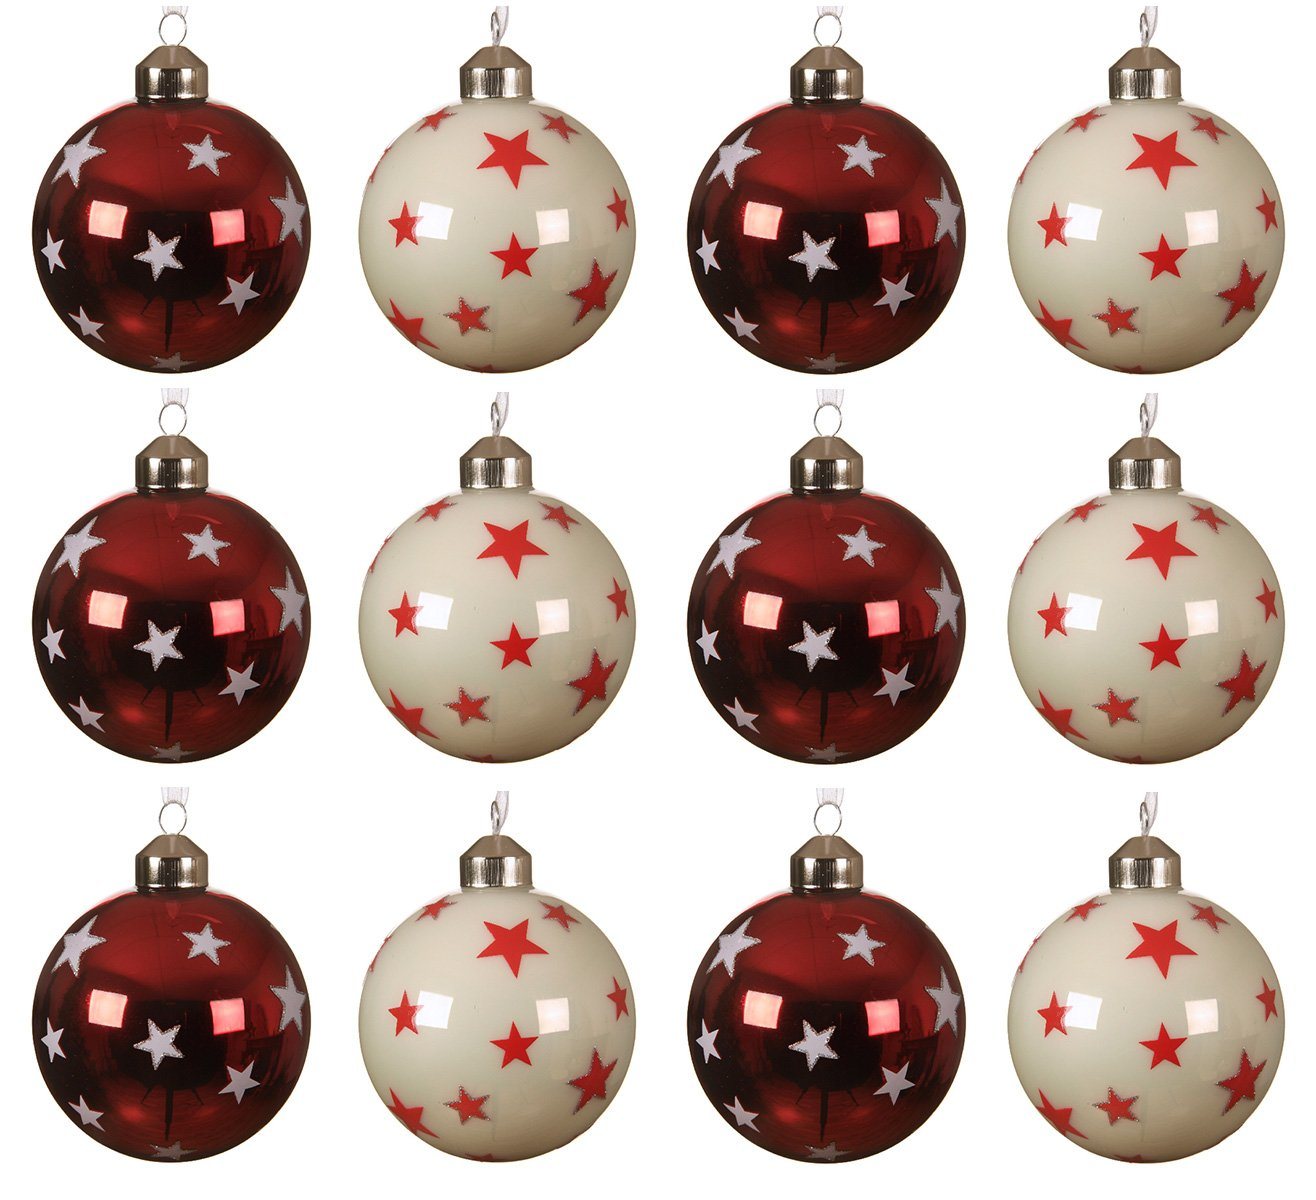 Decoris season decorations Weihnachtsbaumkugel, Weihnachtskugeln Glas 8cm mit Sternen Muster 12er Set rot / weiß von Decoris season decorations